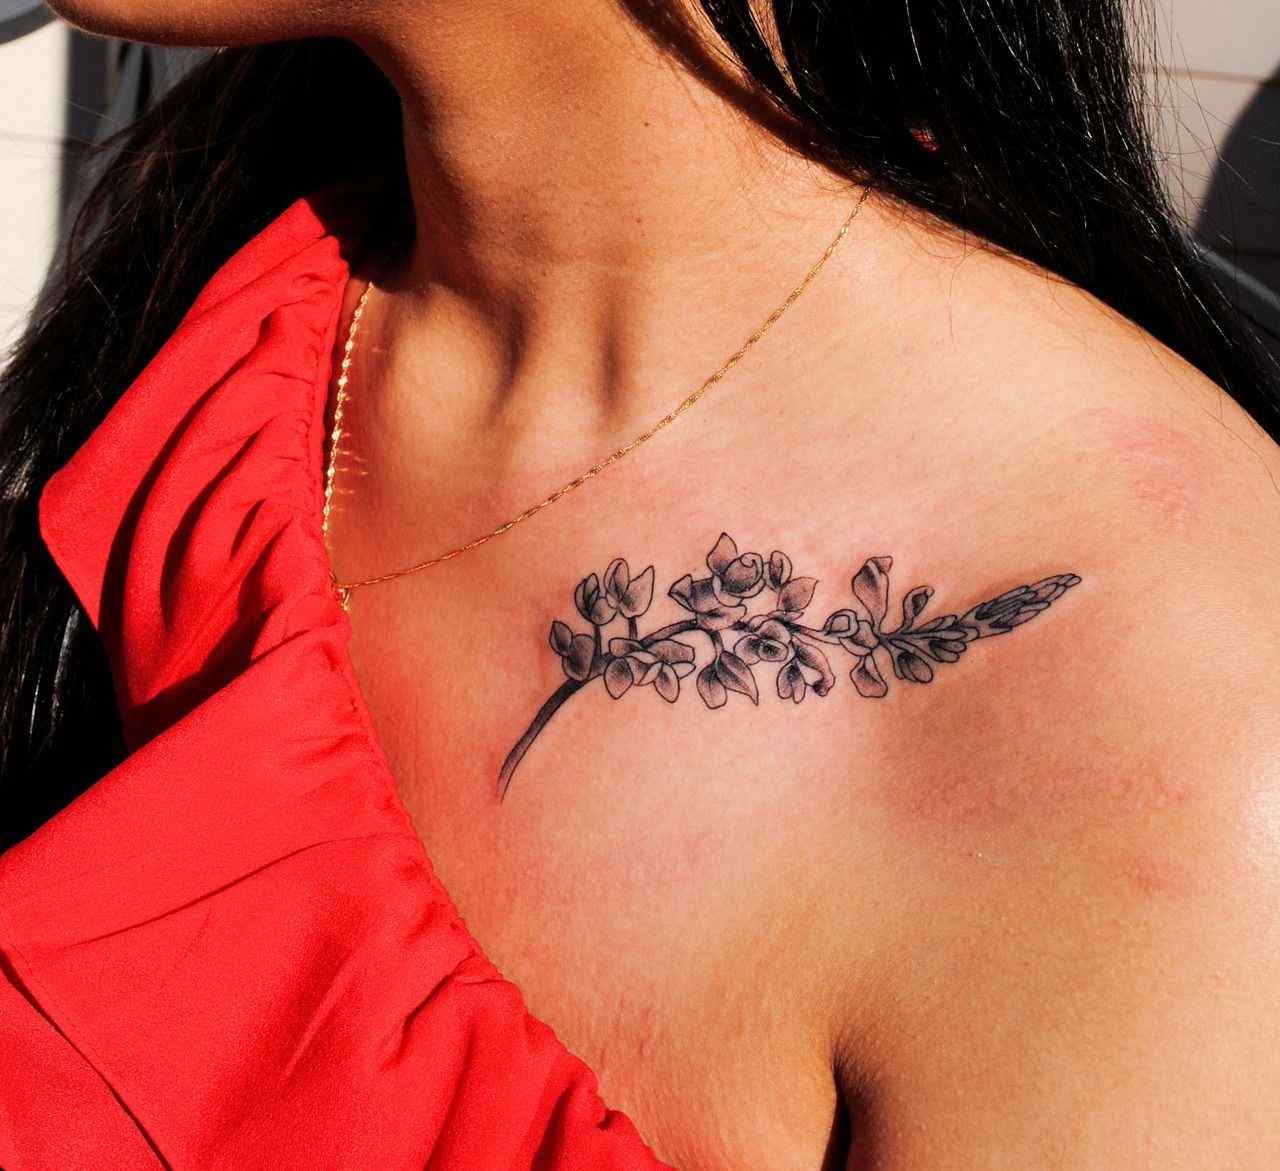 Tatuagem de flores significando clavícula de tatuagem idéias de design de tatuagem de mulheres pequenas